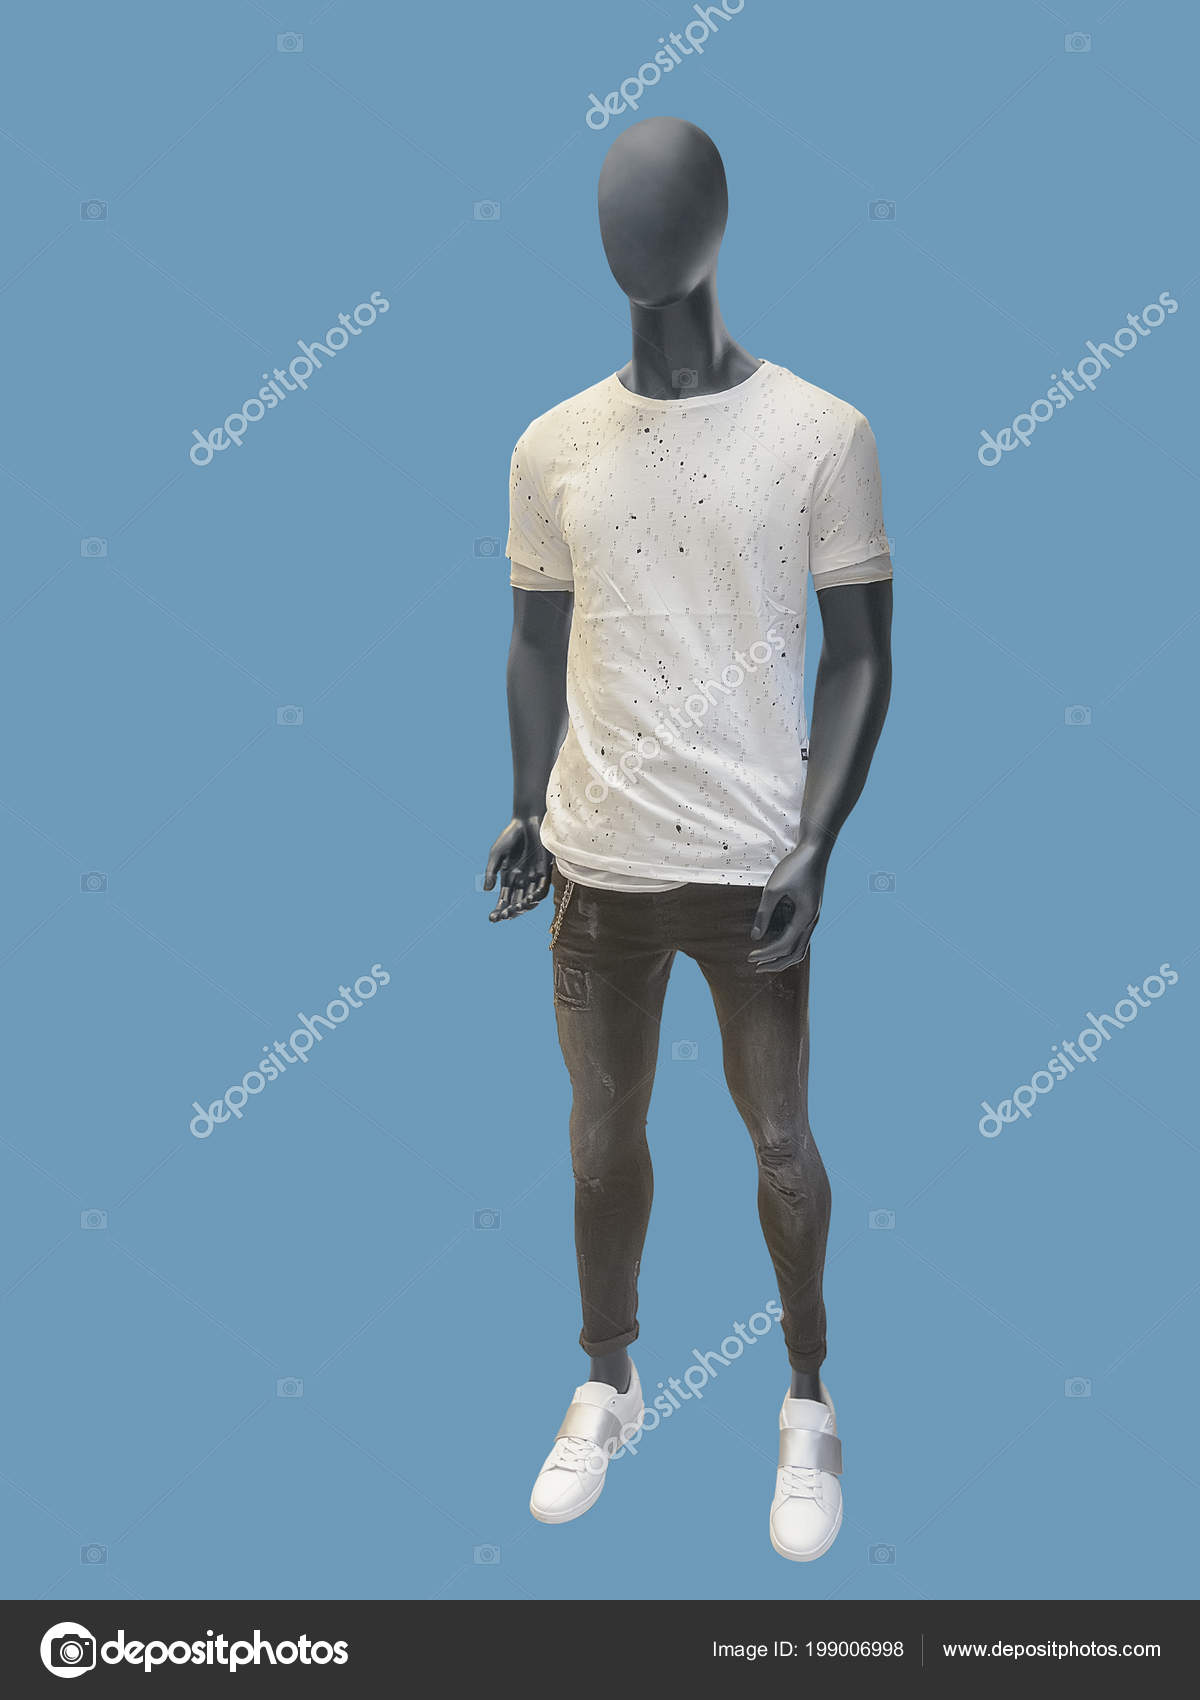 https://st4.depositphotos.com/2604745/19900/i/1600/depositphotos_199006998-stock-photo-full-length-man-mannequin-dressed.jpg